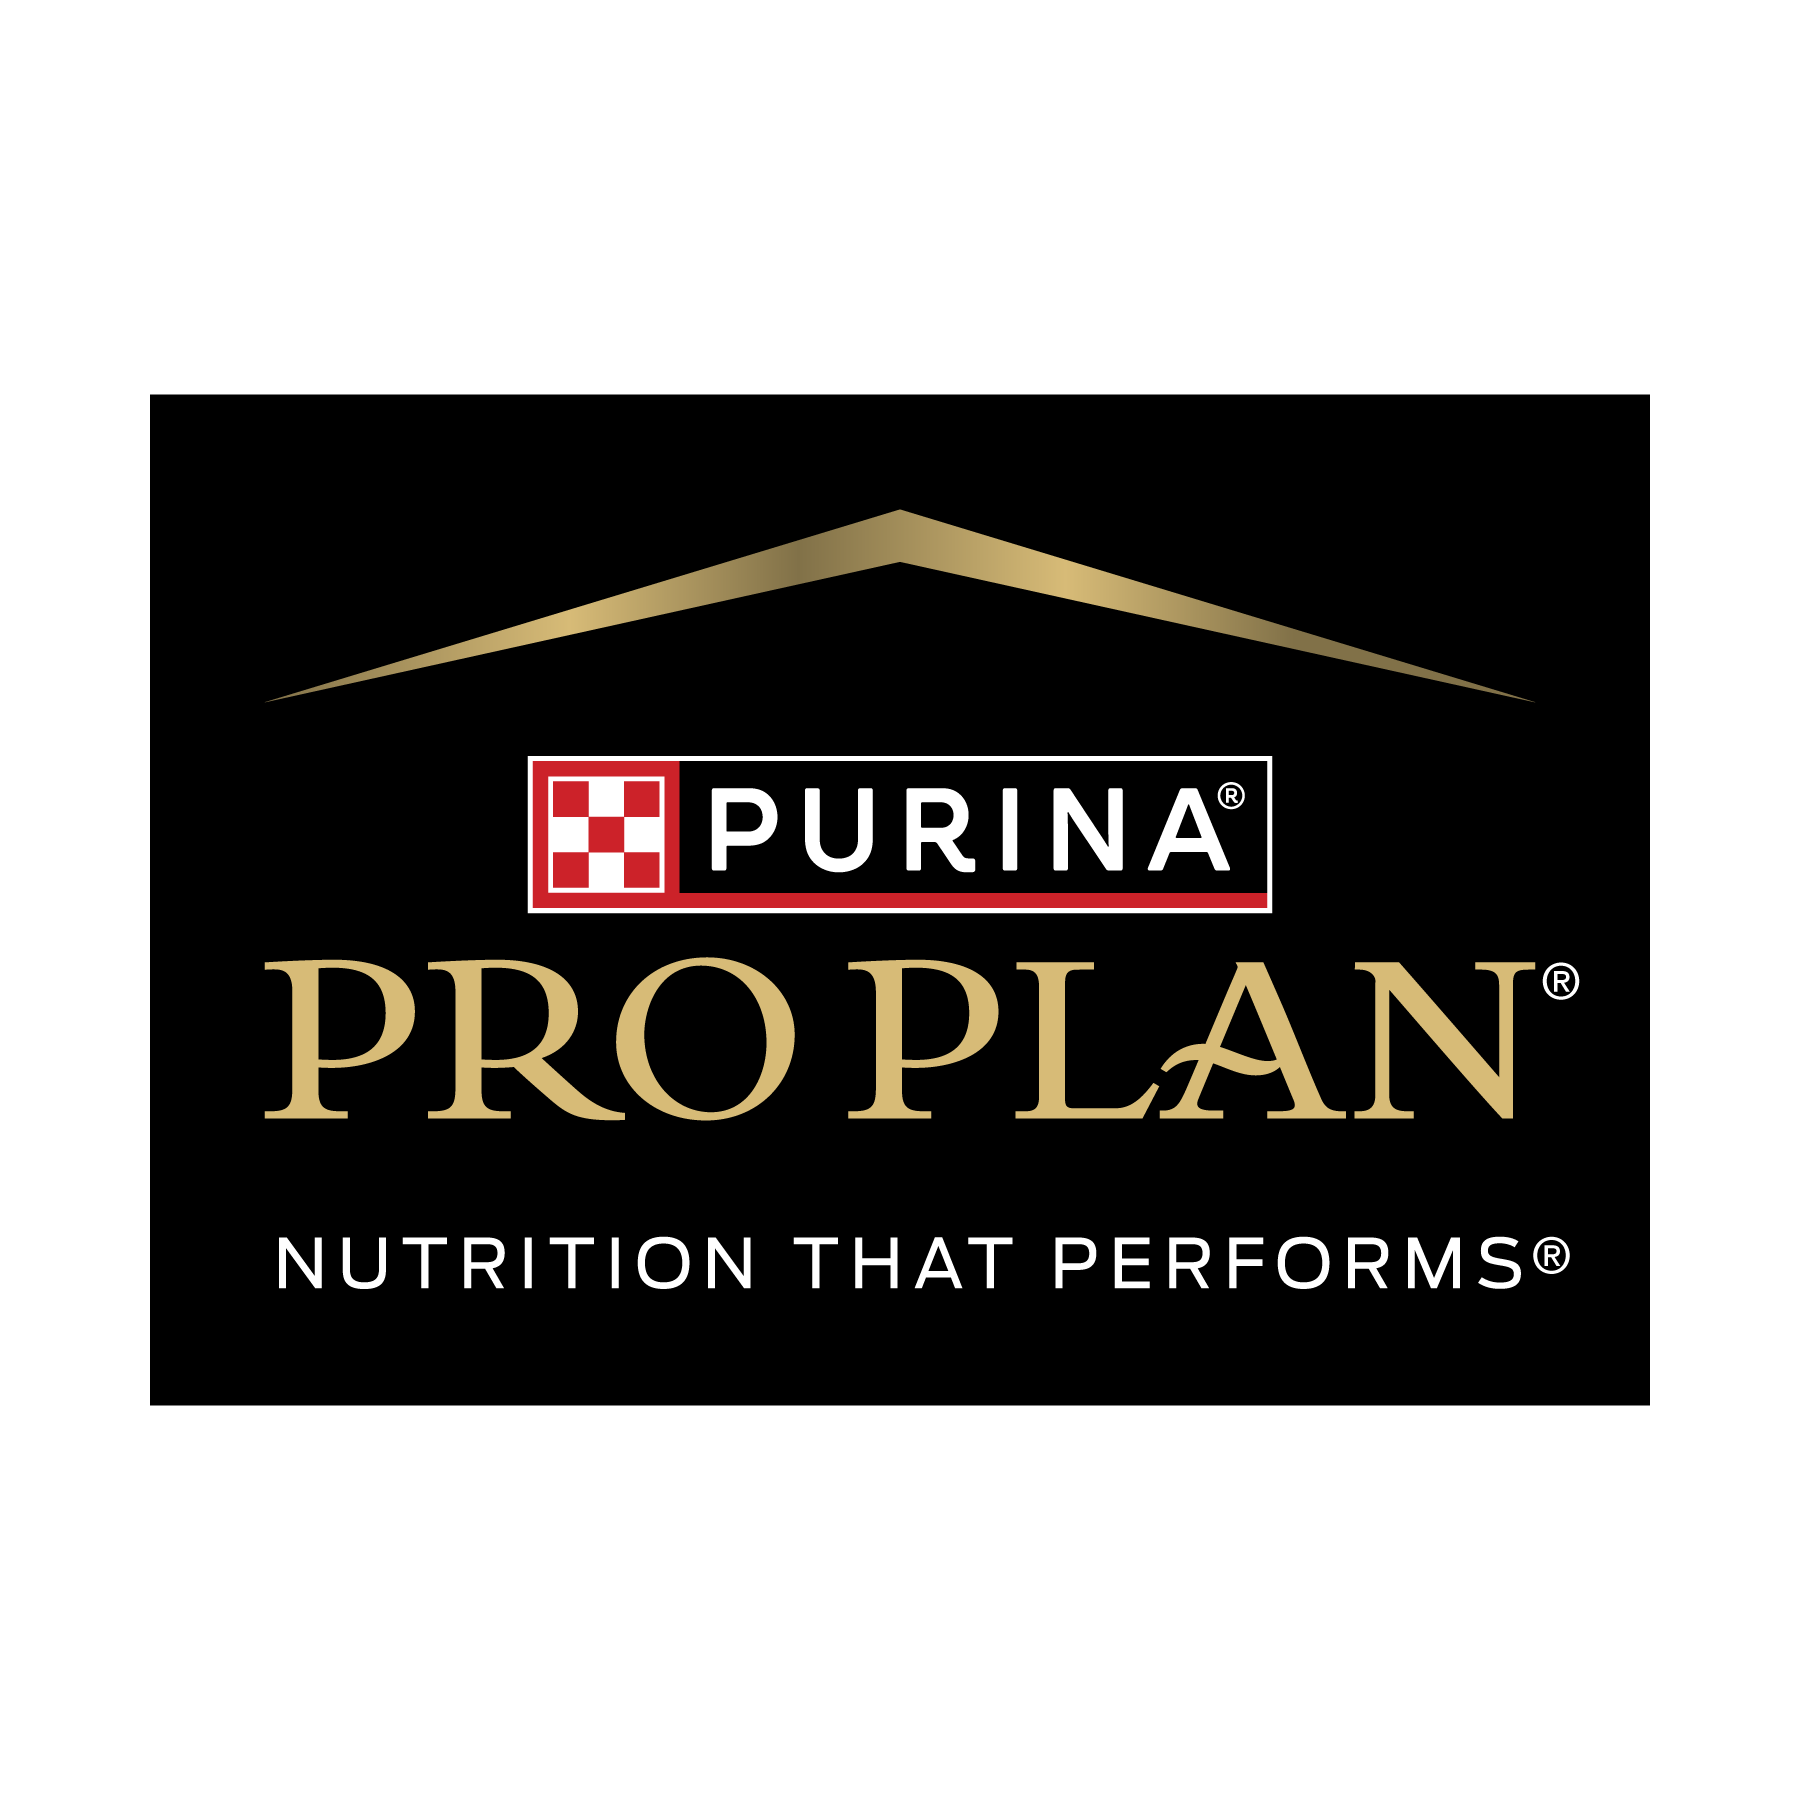 Pro Plan logo